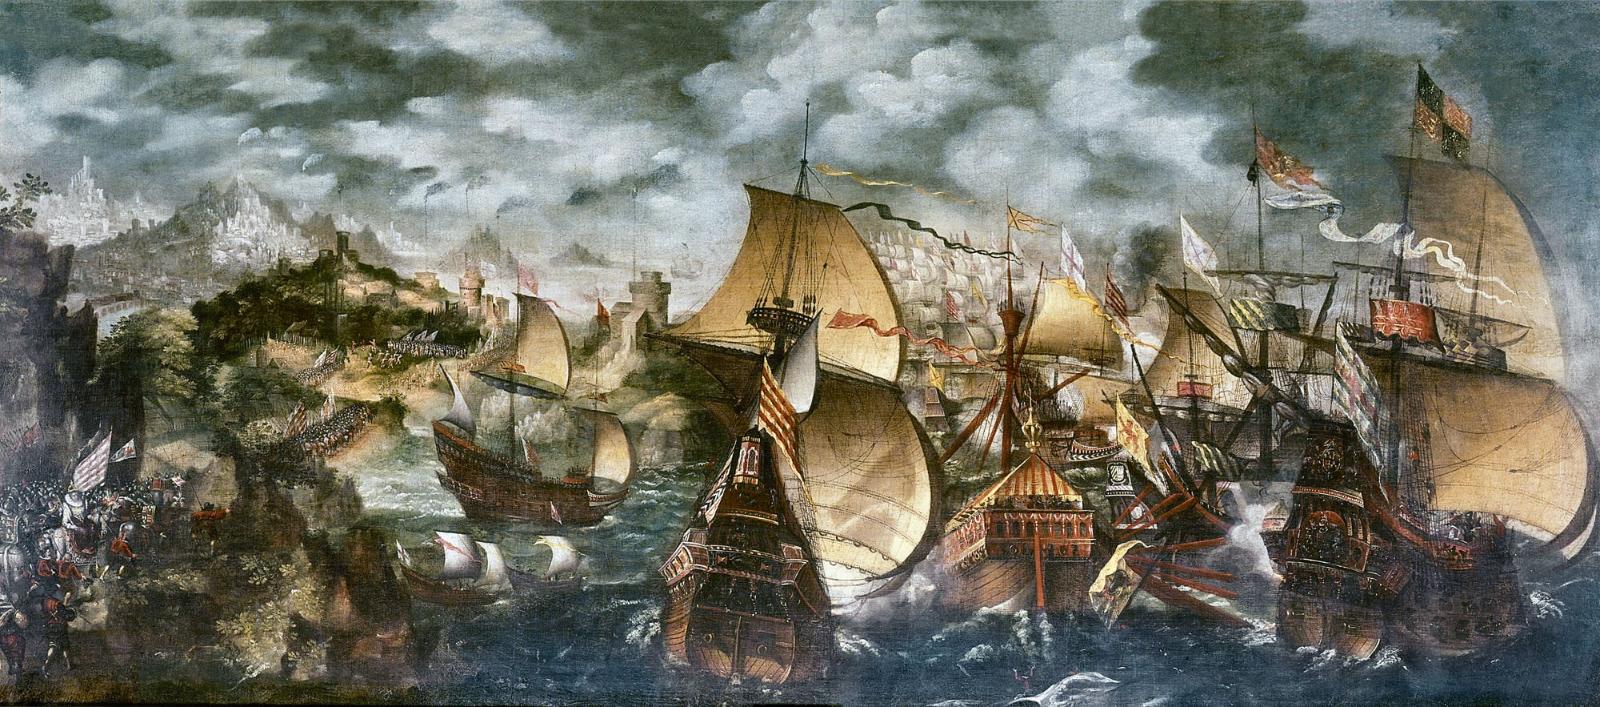 Сражение испанских и английских кораблей.